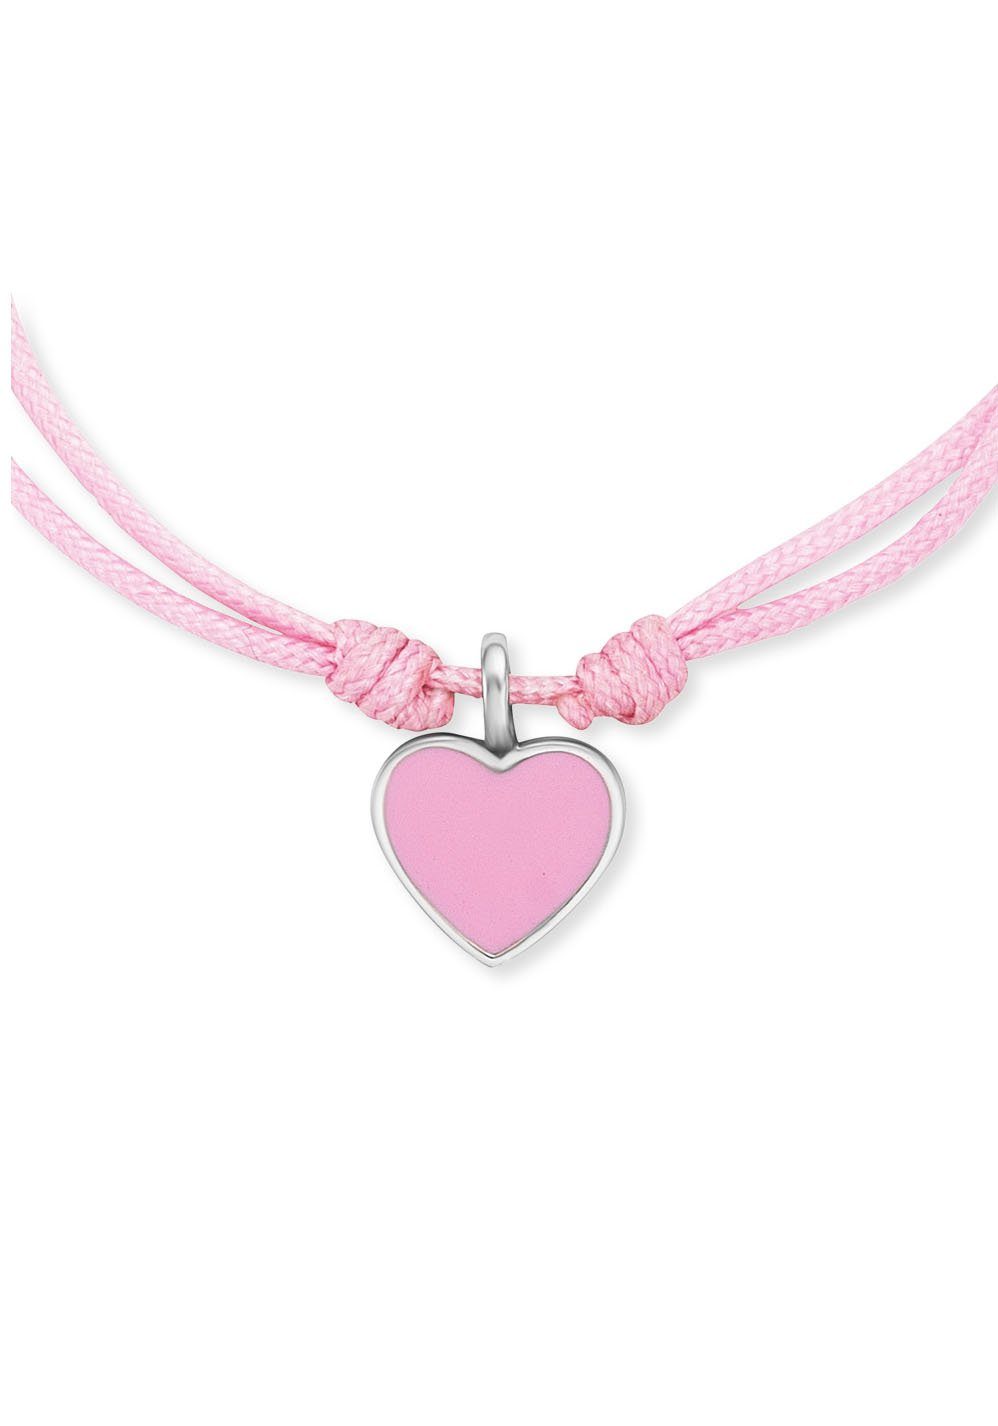 Little Herz Armband mit Prinzessinnen - Armband unsere für mit Herz, Herzengel Stars Anhänger kleinen HEB-HEART, Emaille,